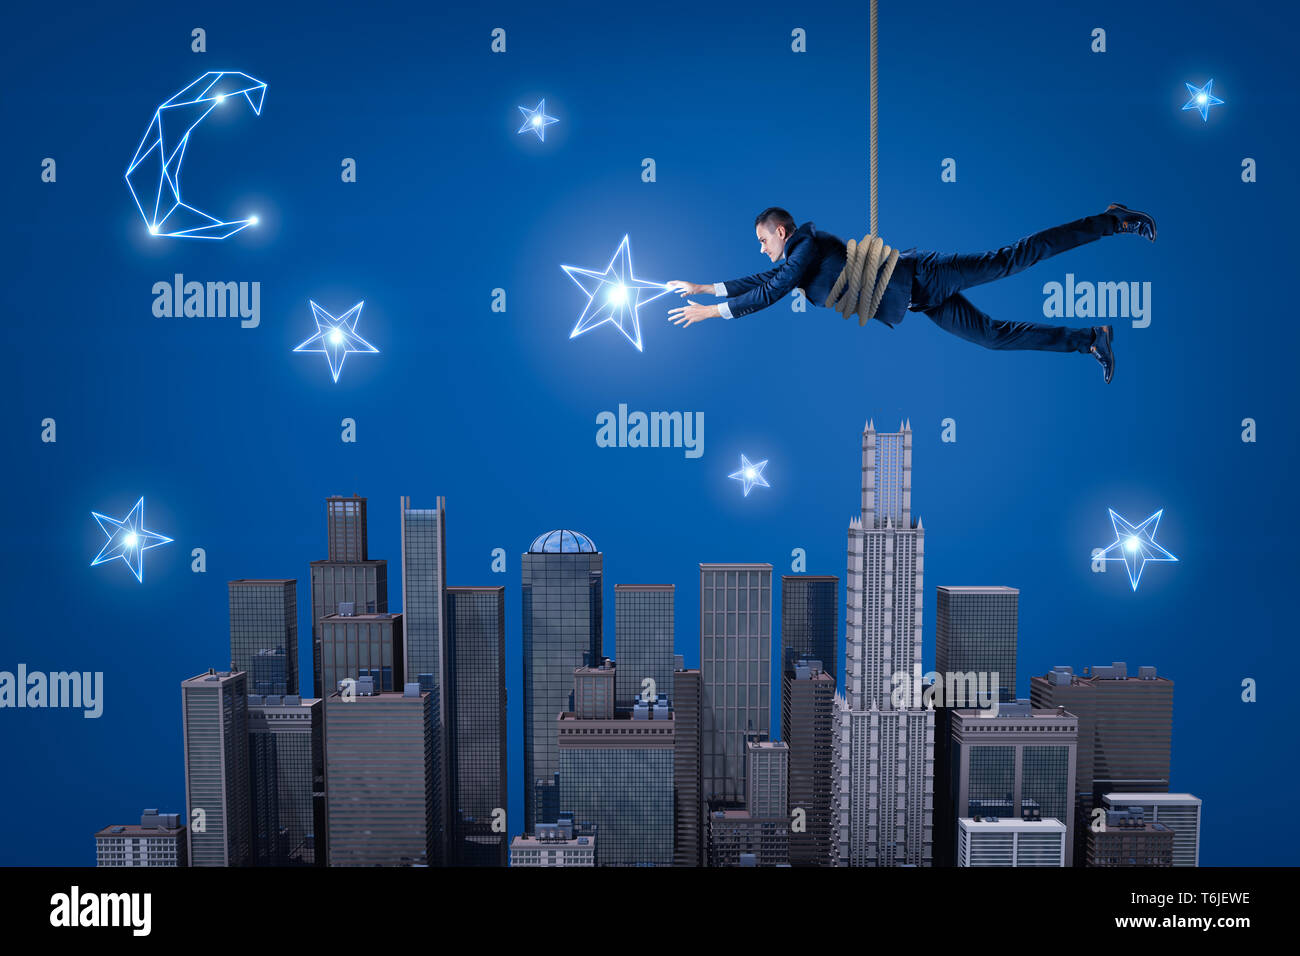 Ein Geschäftsmann hängend an einem Seil über eine Nacht Stadt und versuchen, einen Stern am Himmel zu fangen. Stockfoto